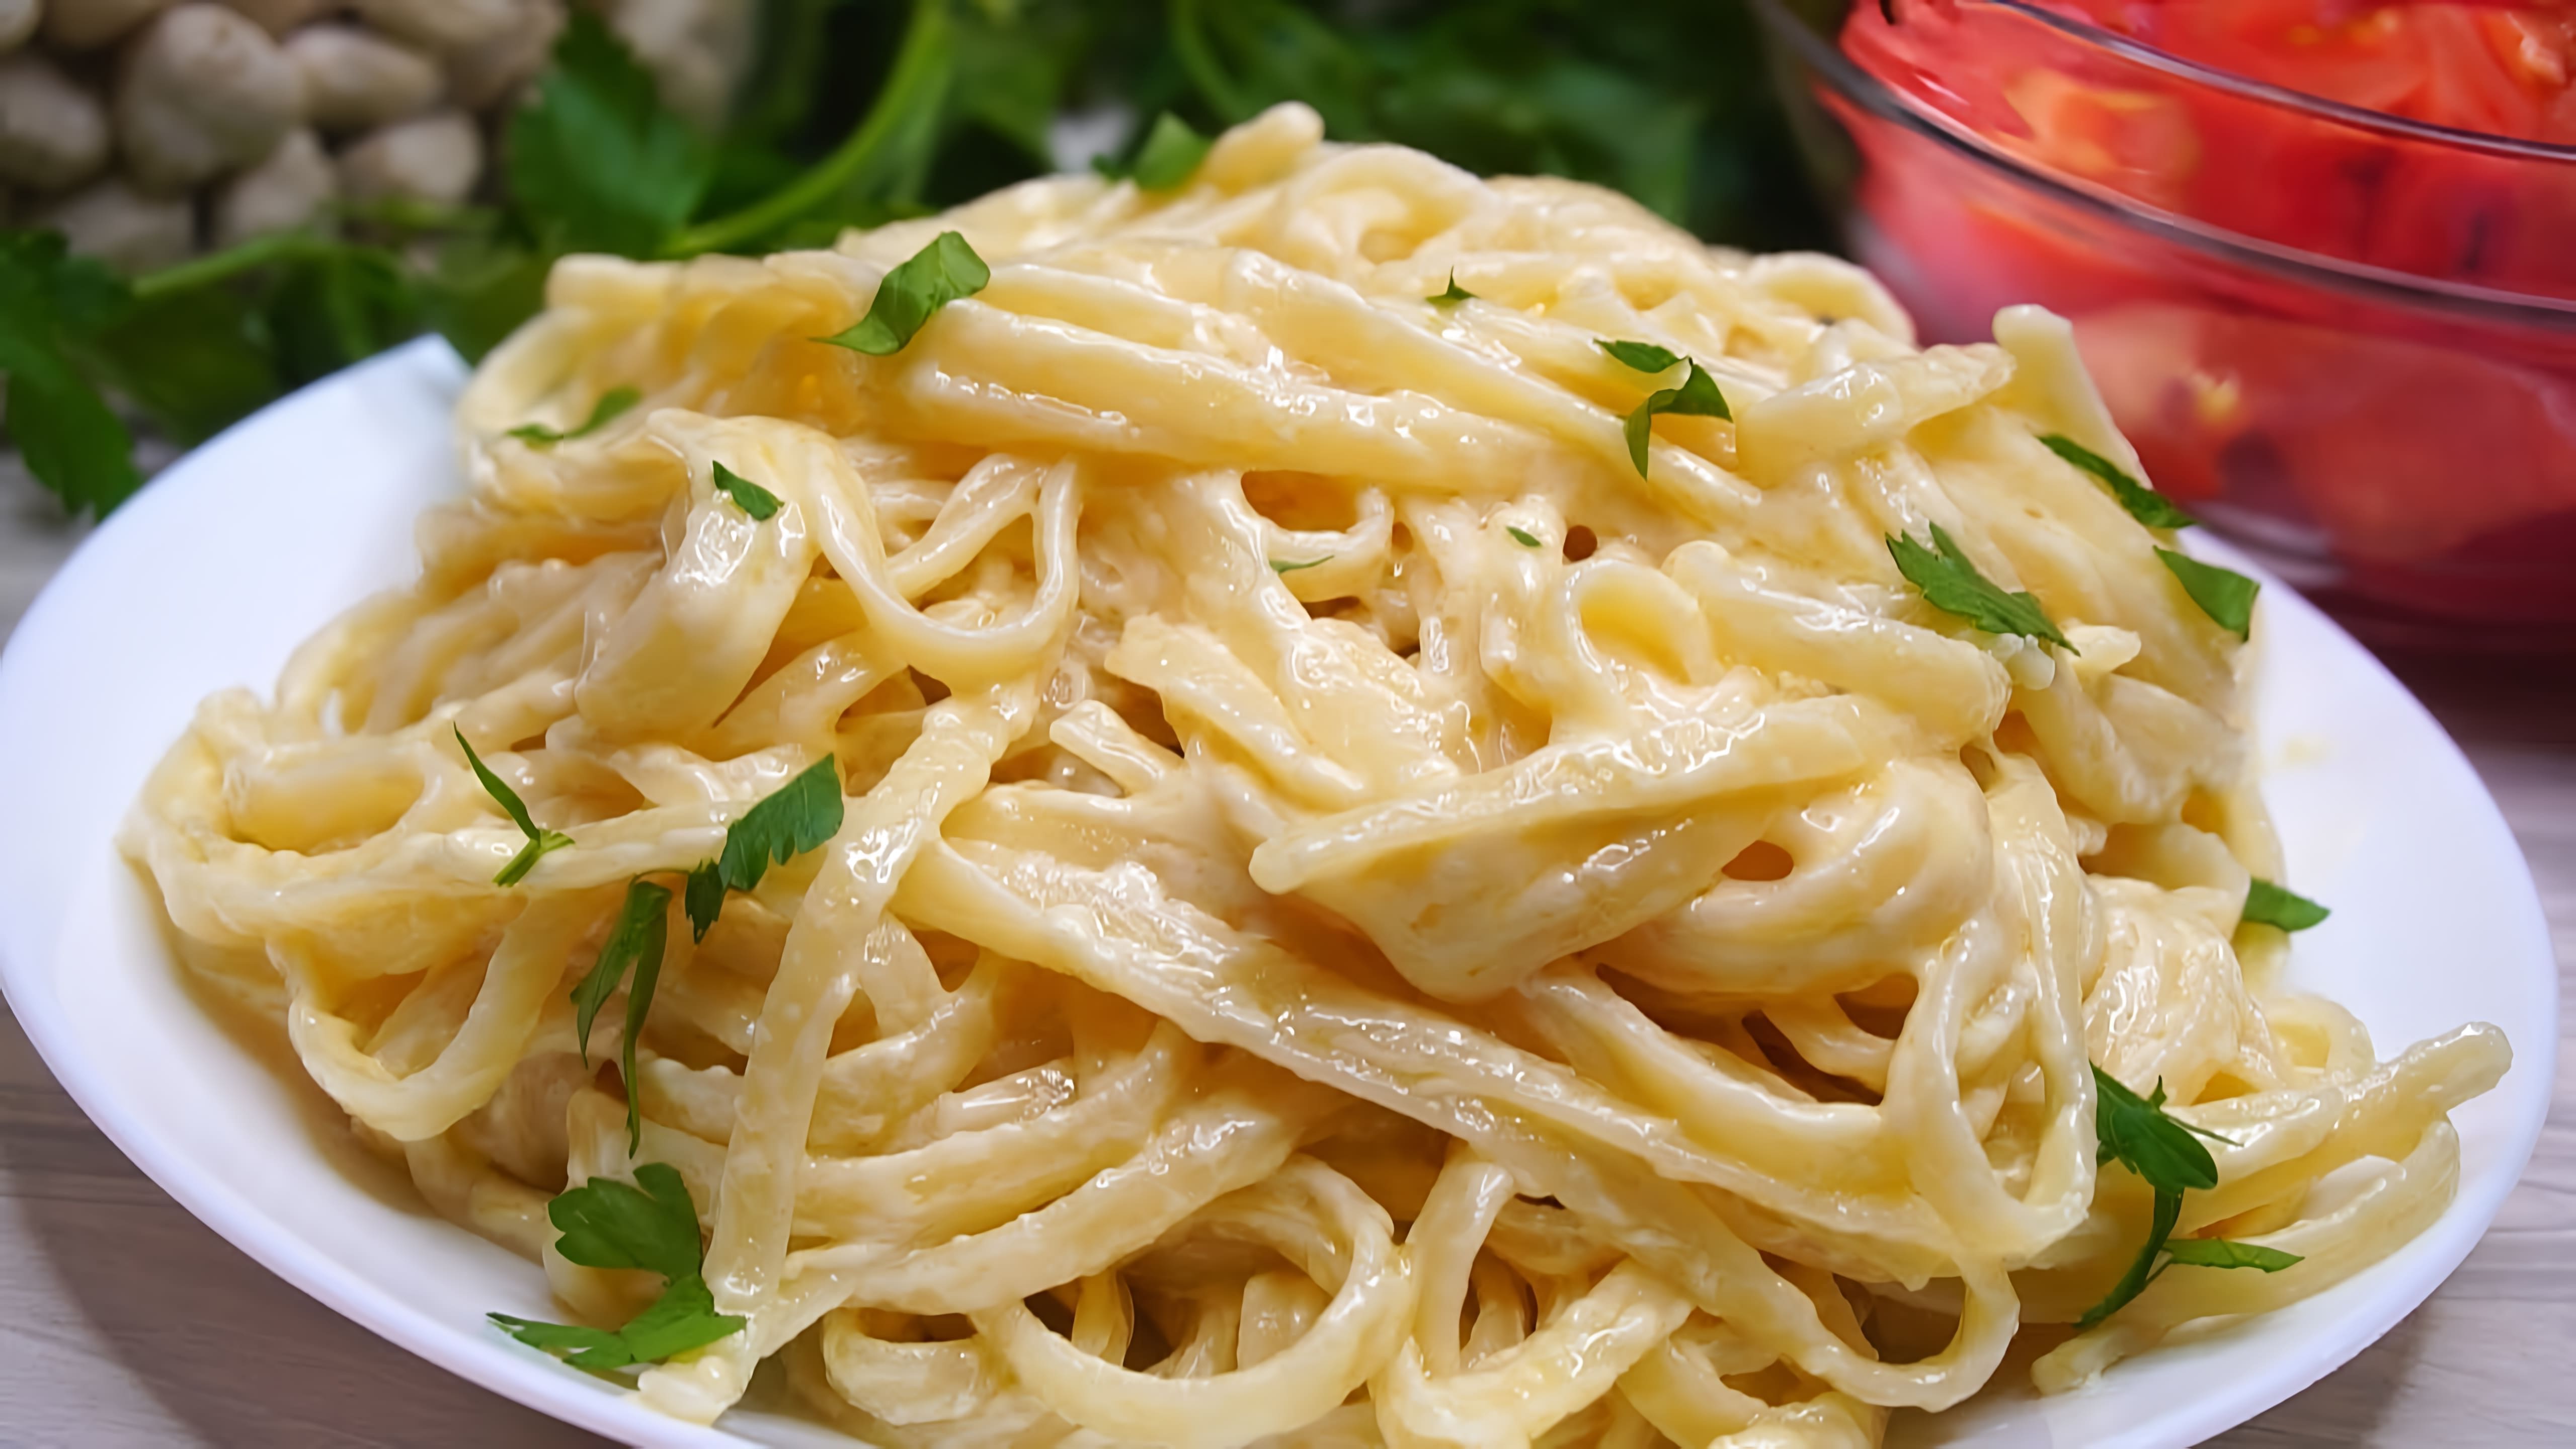 В этом видео демонстрируется простой и быстрый способ приготовления макарон с сыром и сливками